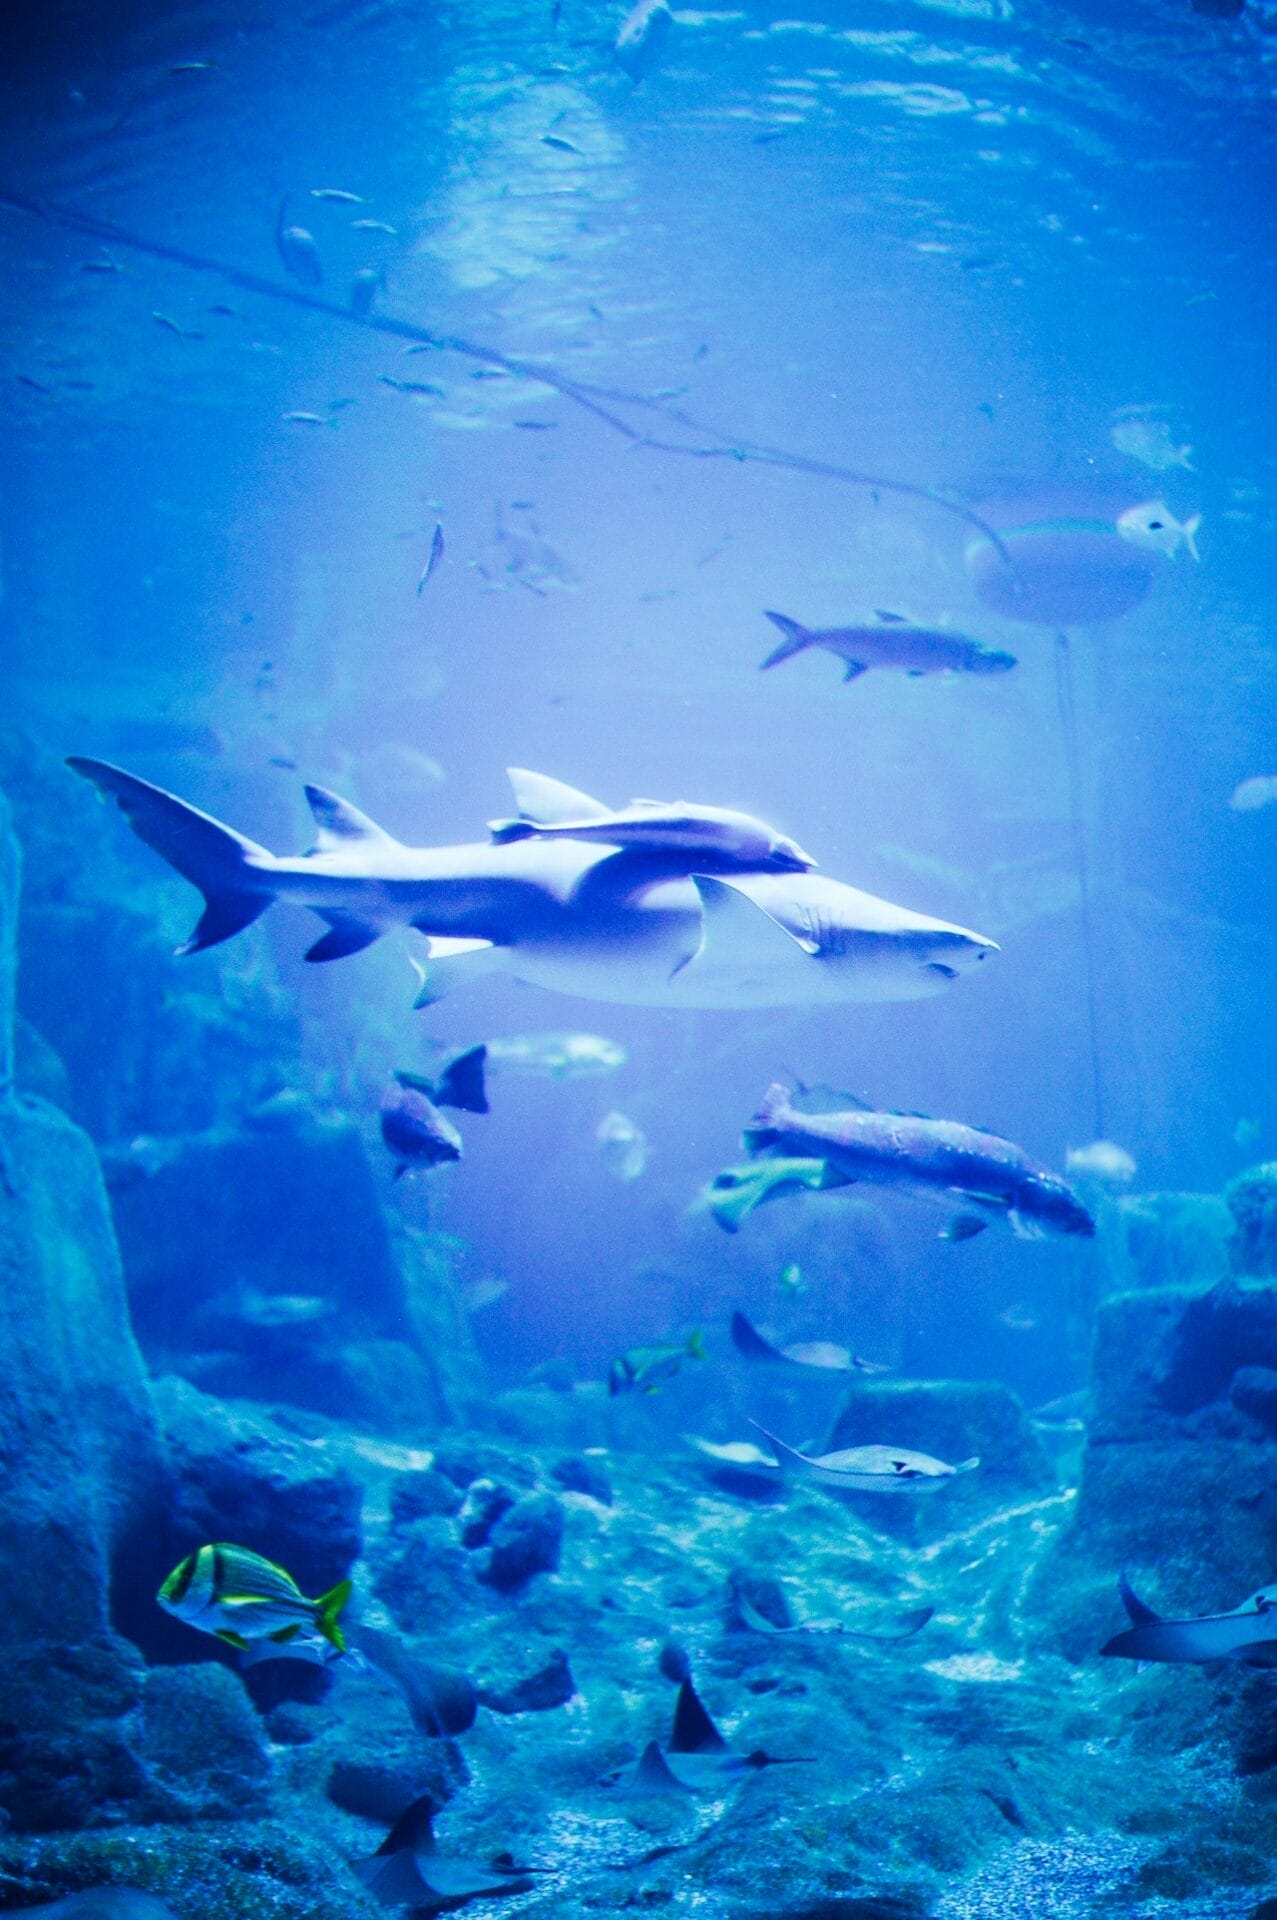 Rule of Thirds Aquascaping: Harmony in Aquarium Design